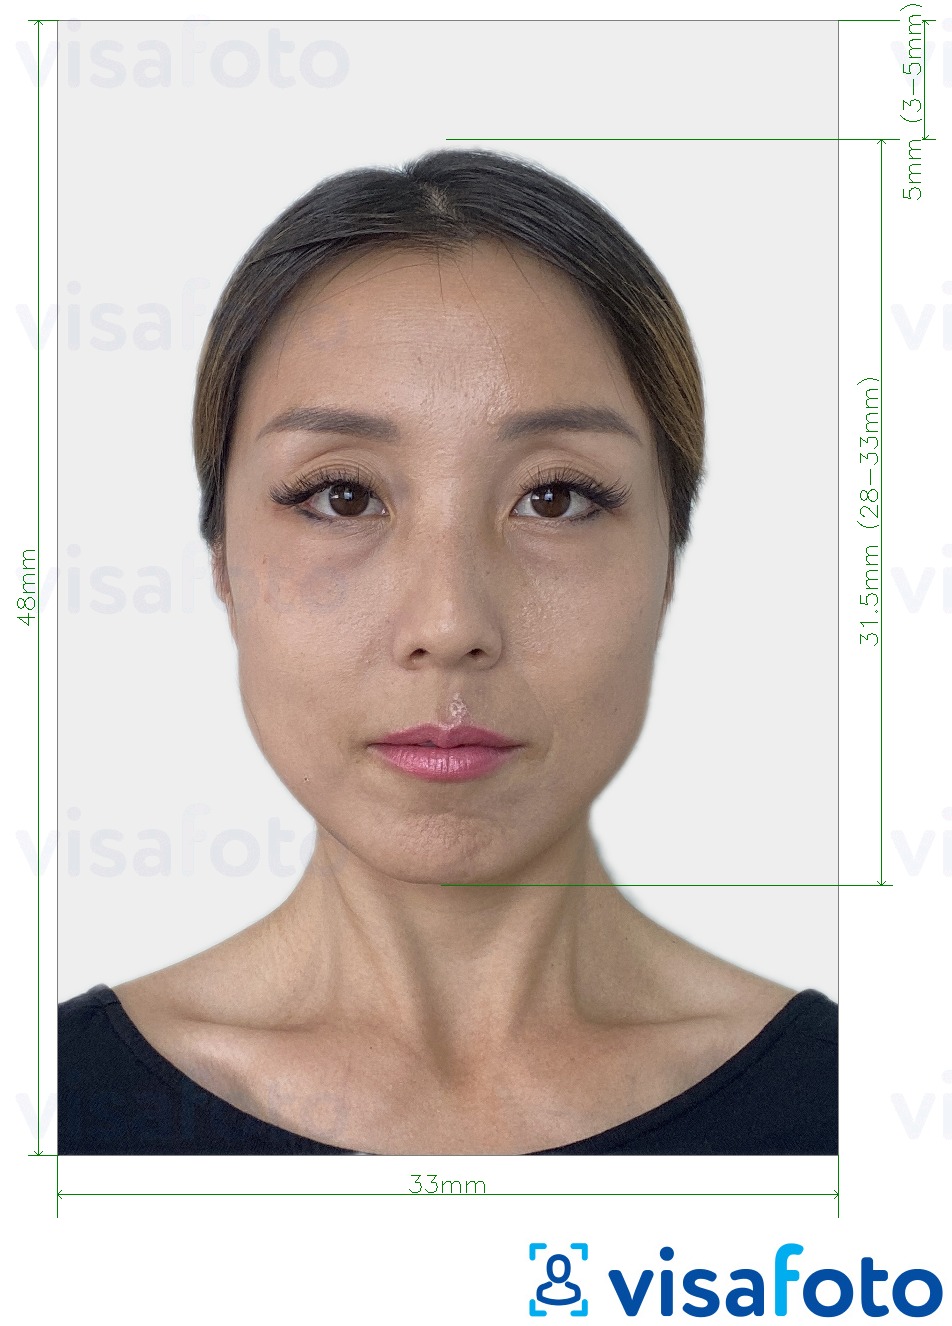 Fotobeispiel für China Green Card 33x48 mm mit genauer größenangabe